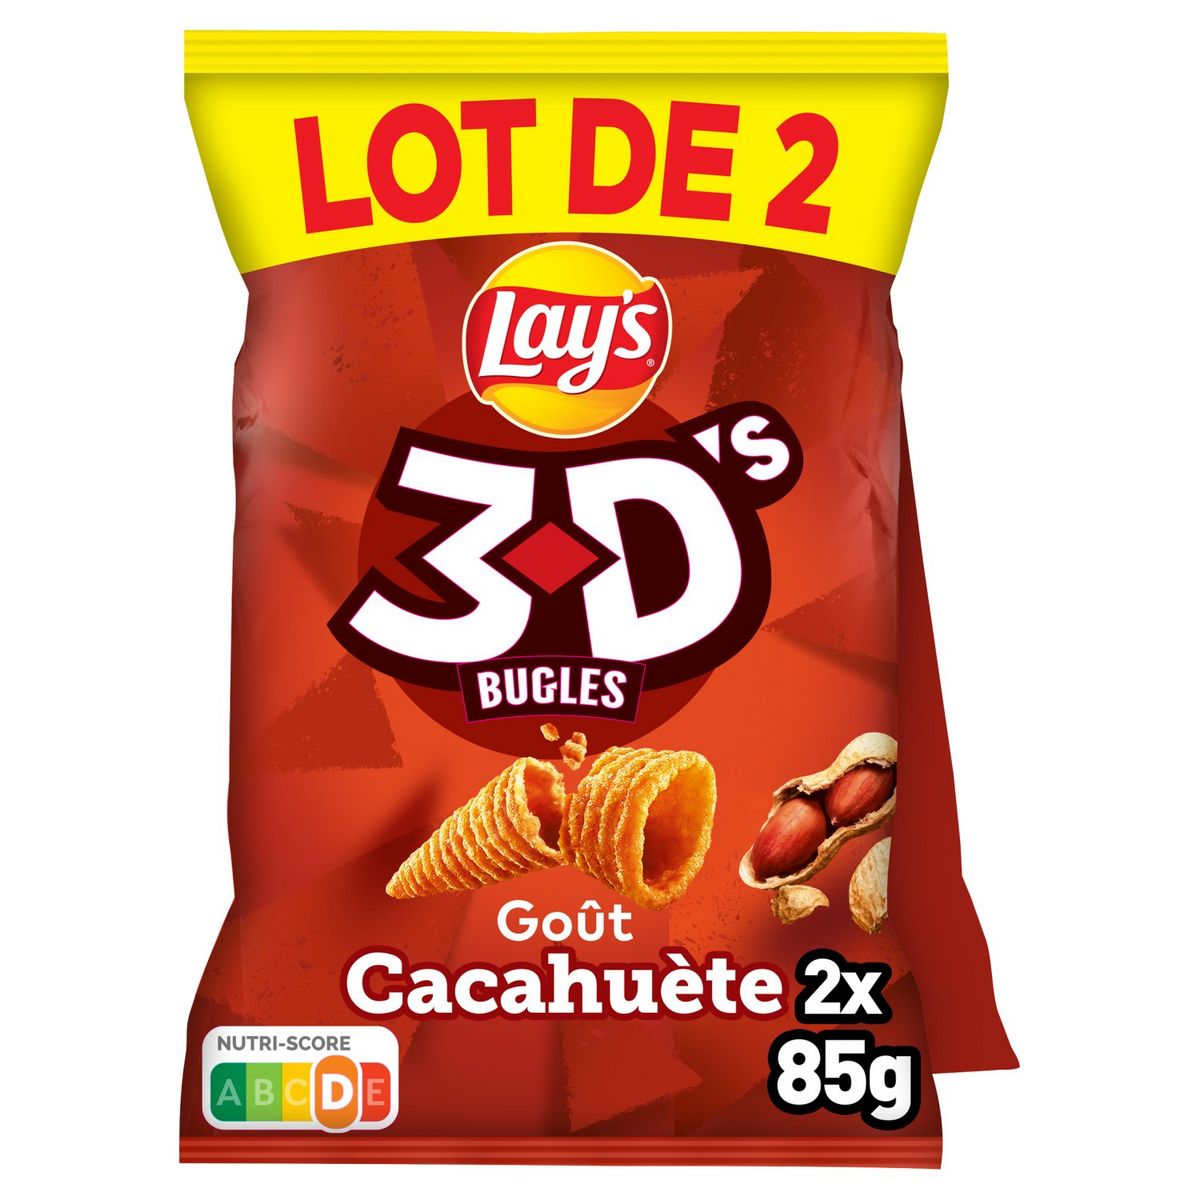 LAY'S Biscuits soufflés 3D's bugles goût cacahuète lot de 2 2x85g